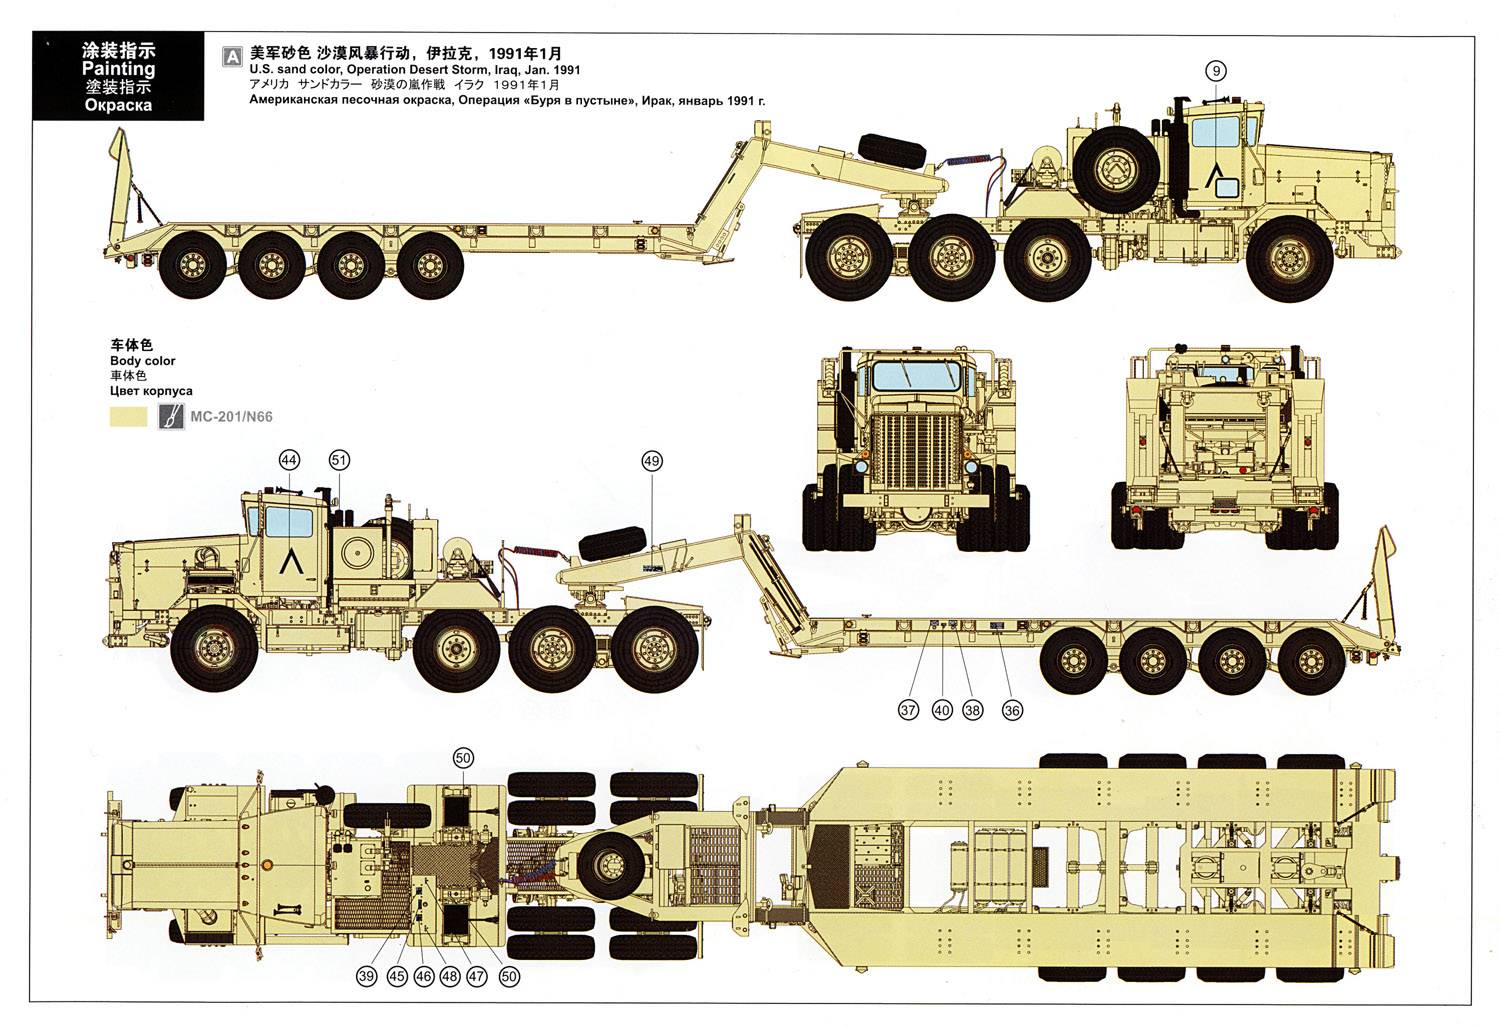 Обзор моделей грузовиков oshkosh военного назначения